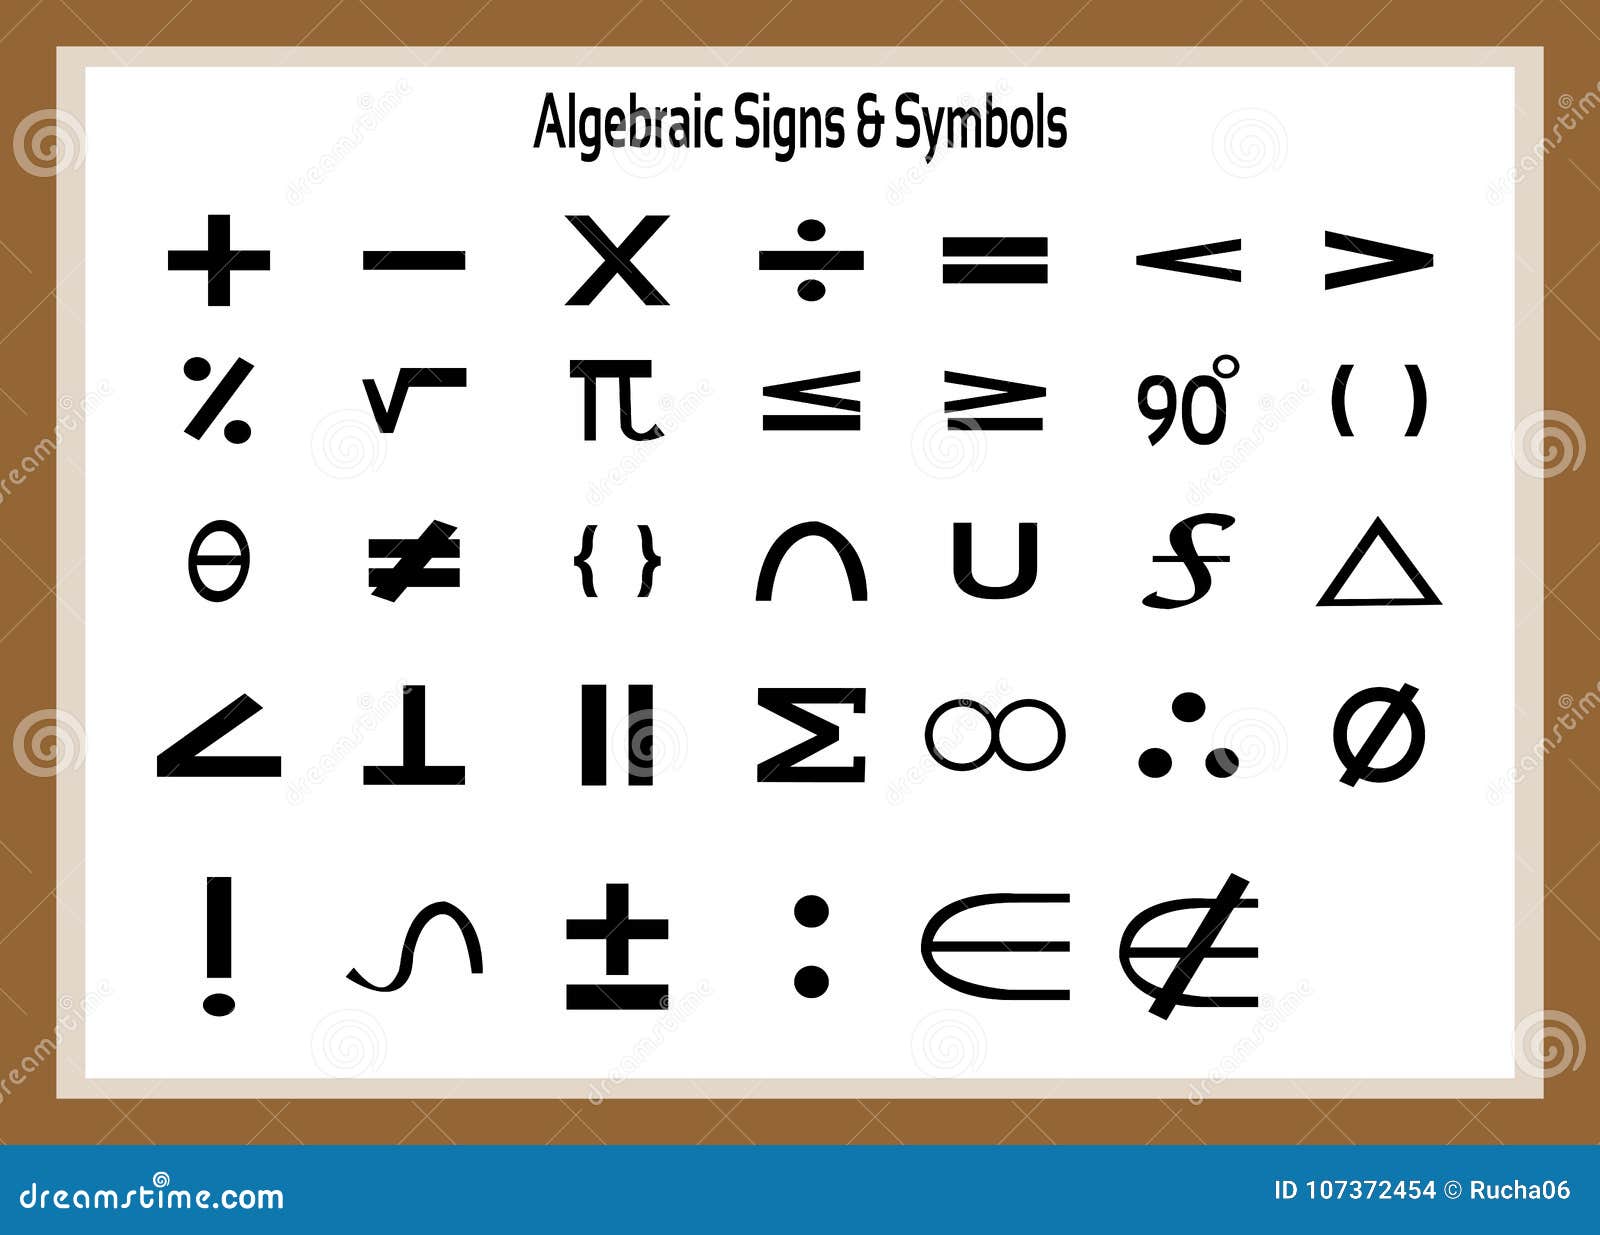 A mix of numbers and symbols. Знаки в математике. Условные математические знаки. Математические обозначения символы. Математические сокращения символы.